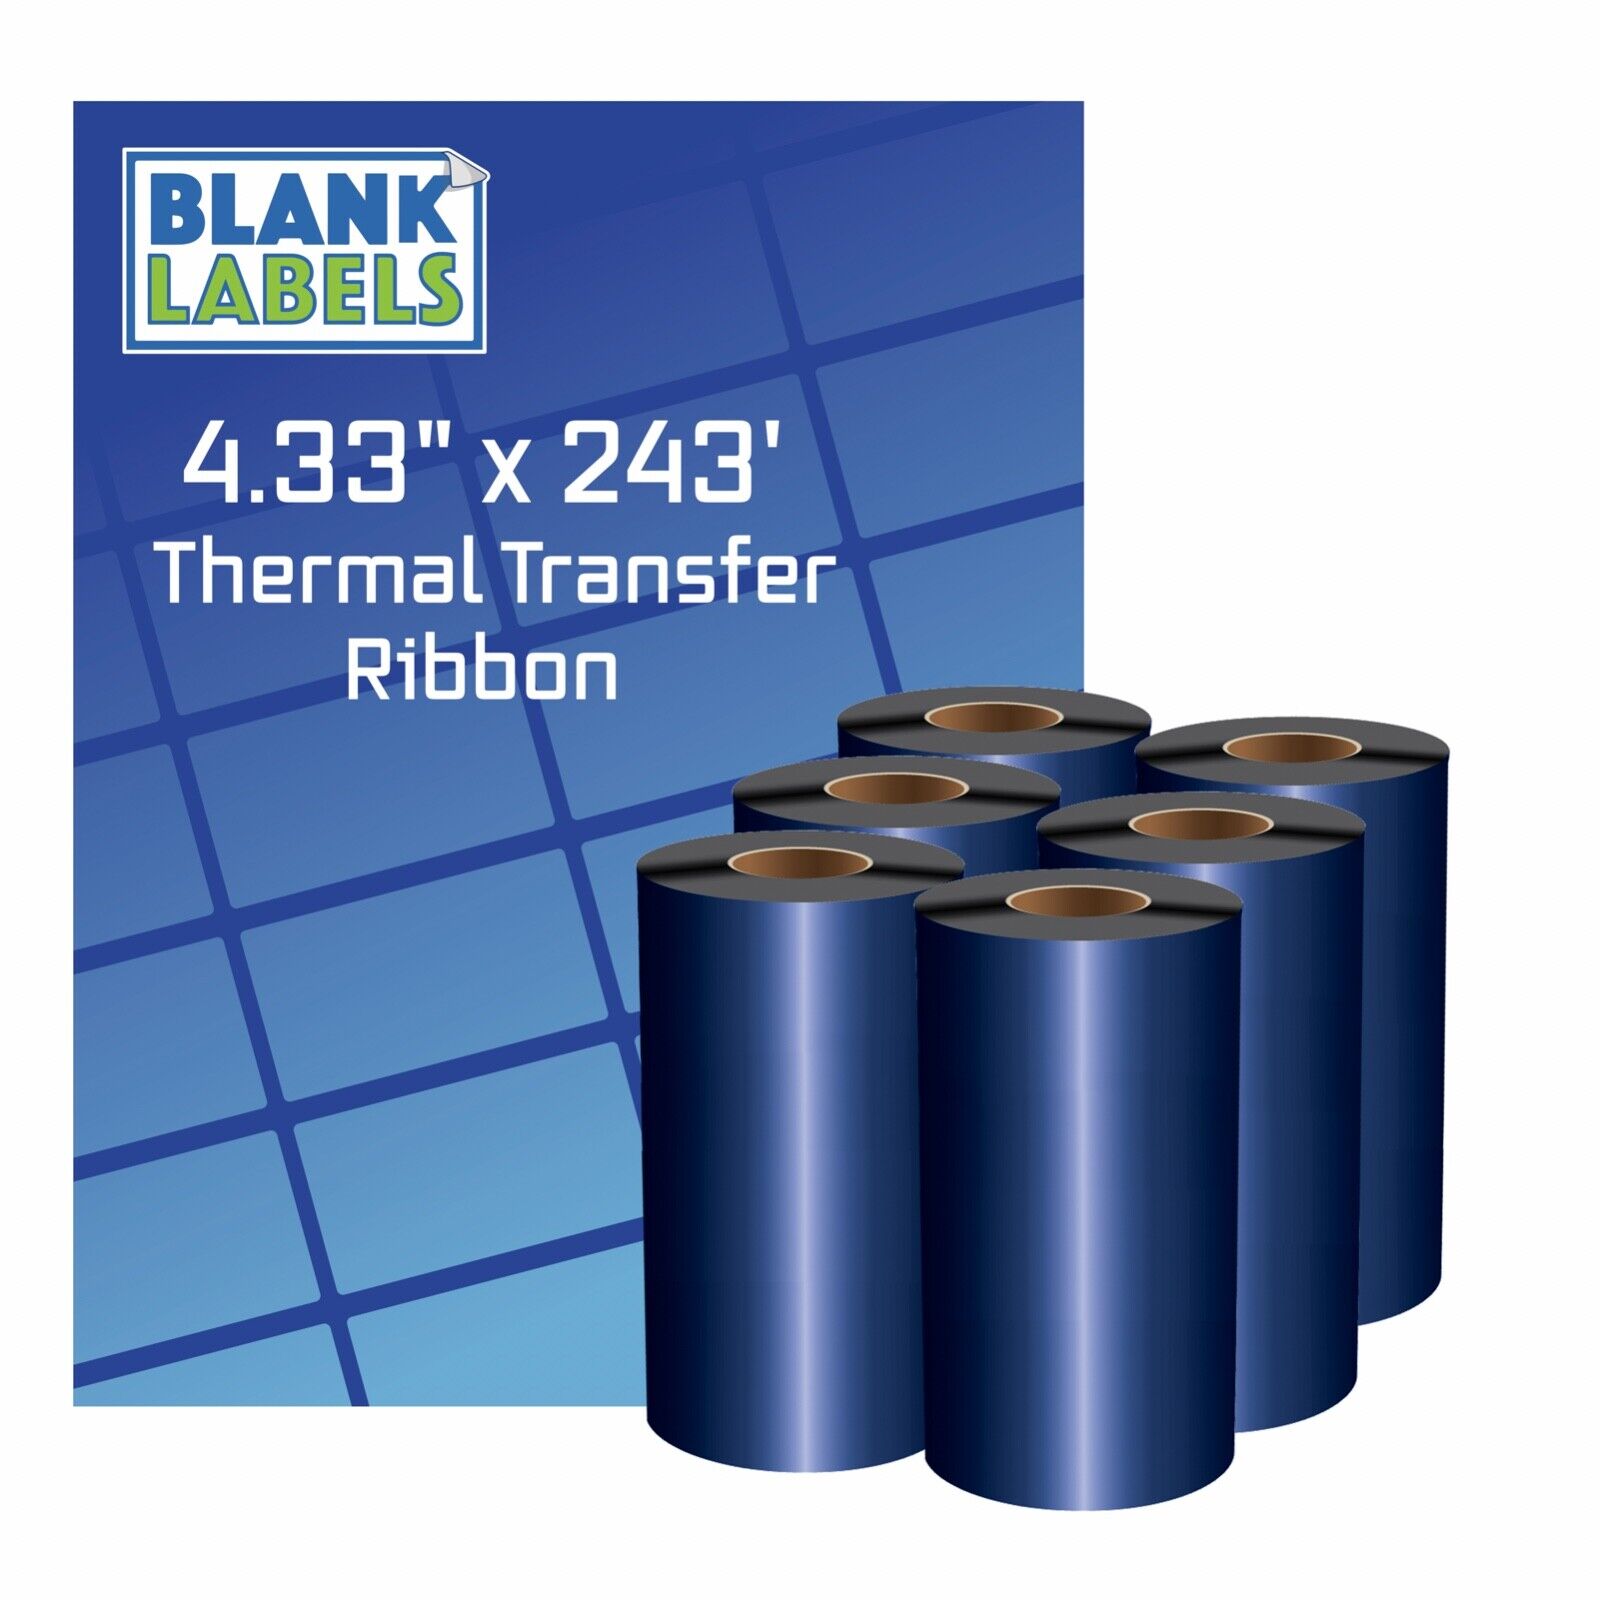 6 Rolls Wax / Resin - 4.33 x 243 Thermal Transfer Ribbon 110 74 Zebra 2844 TLP